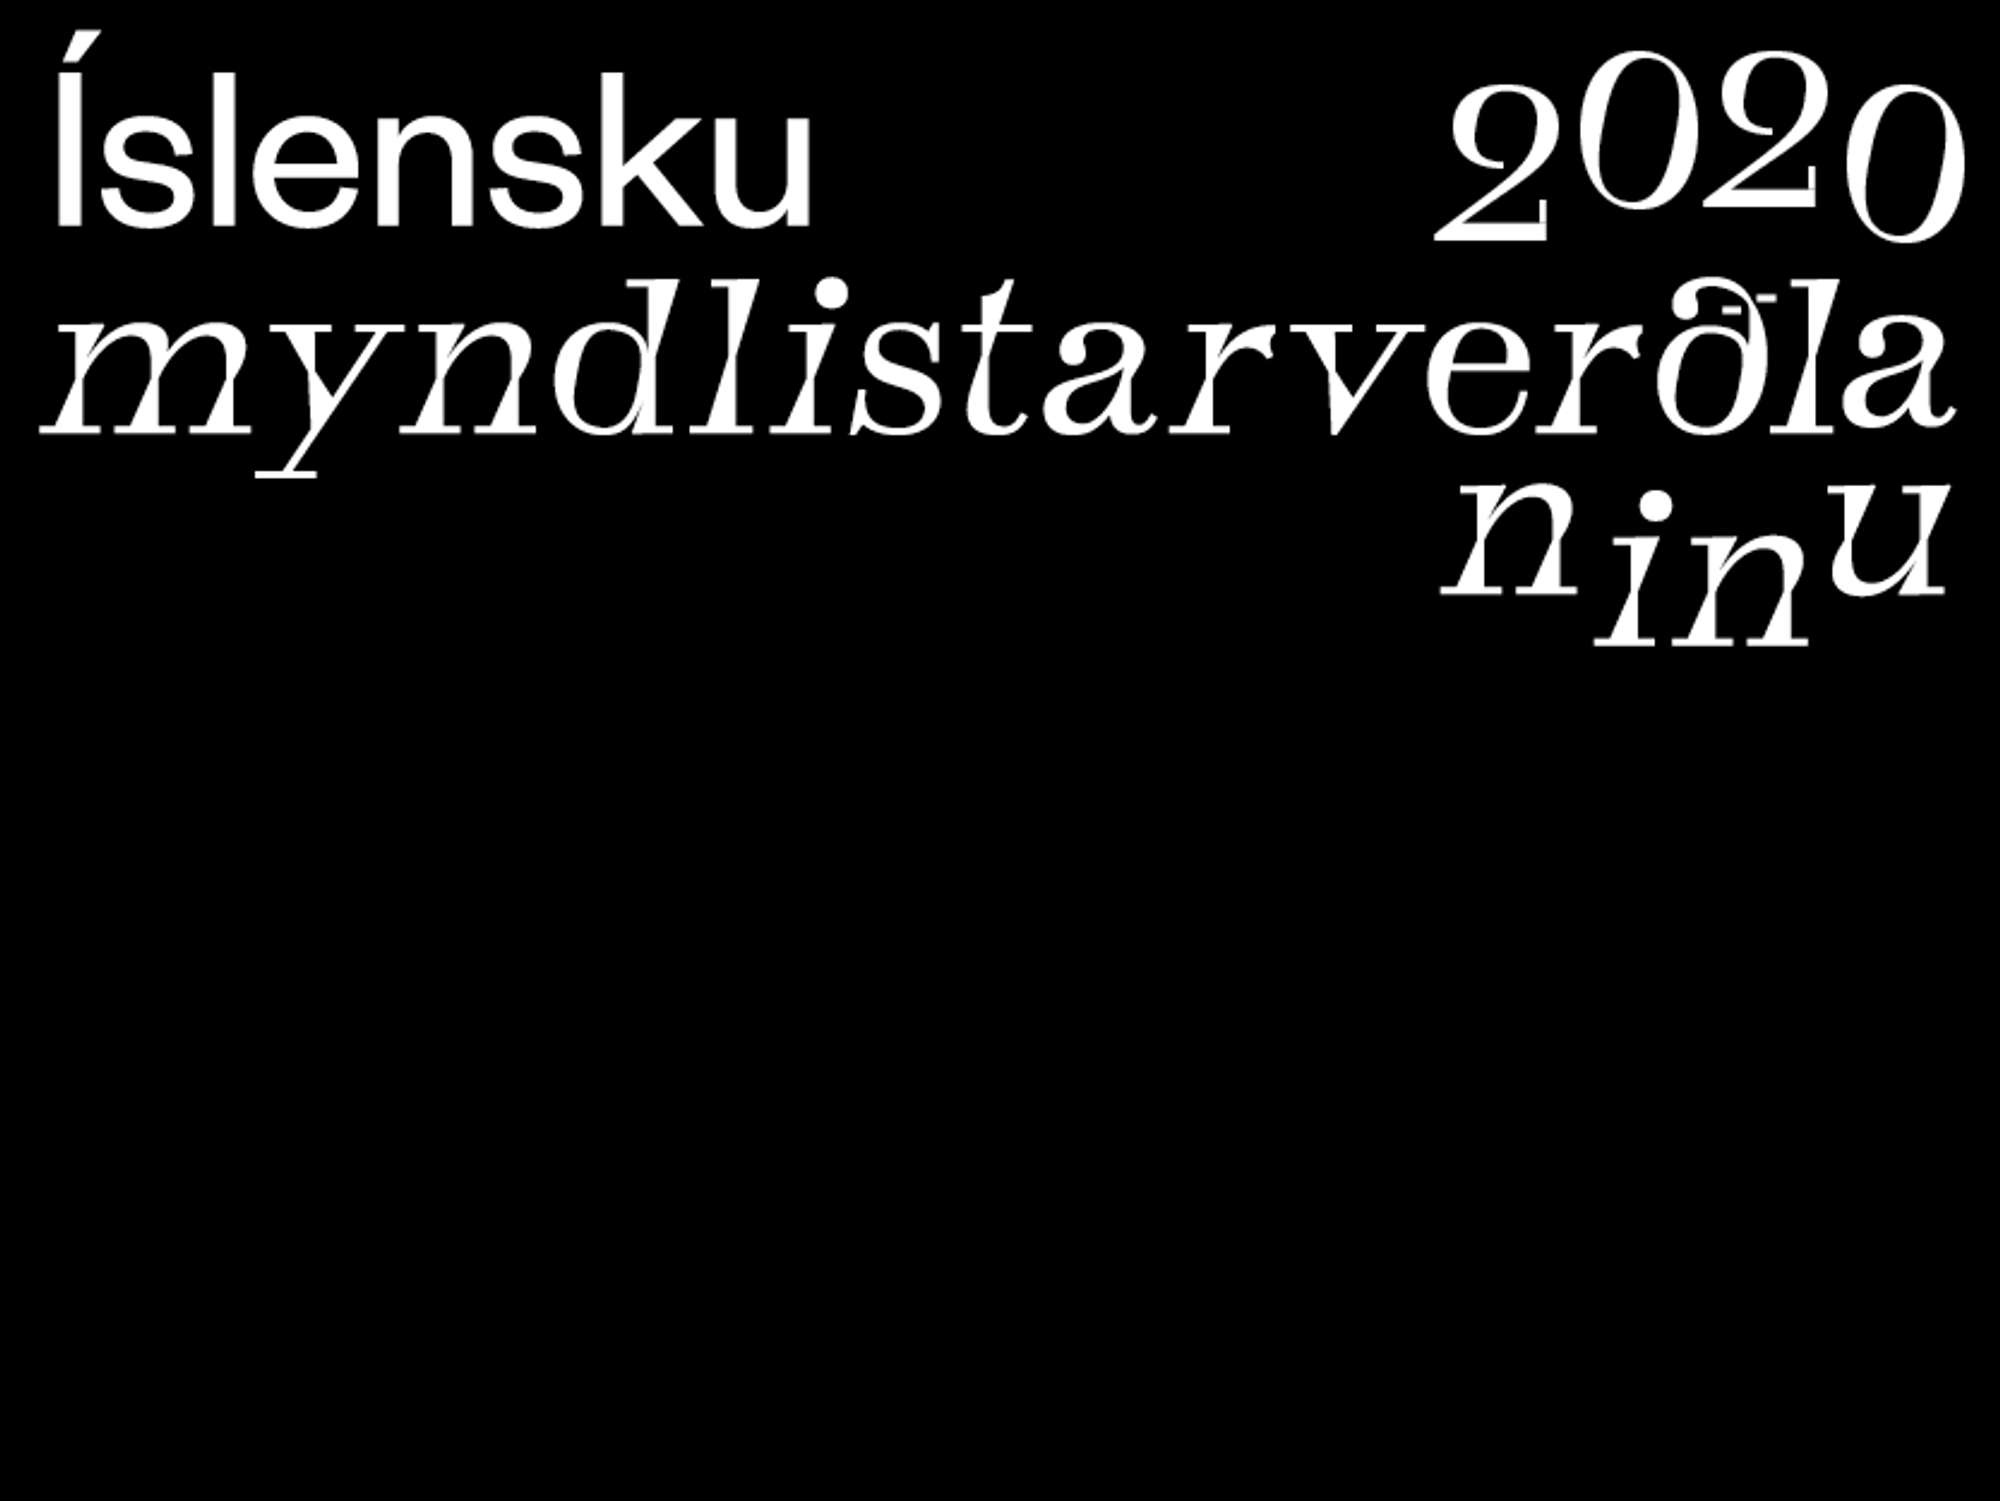 Íslensku myndlistarverðlaunin 2020 merki